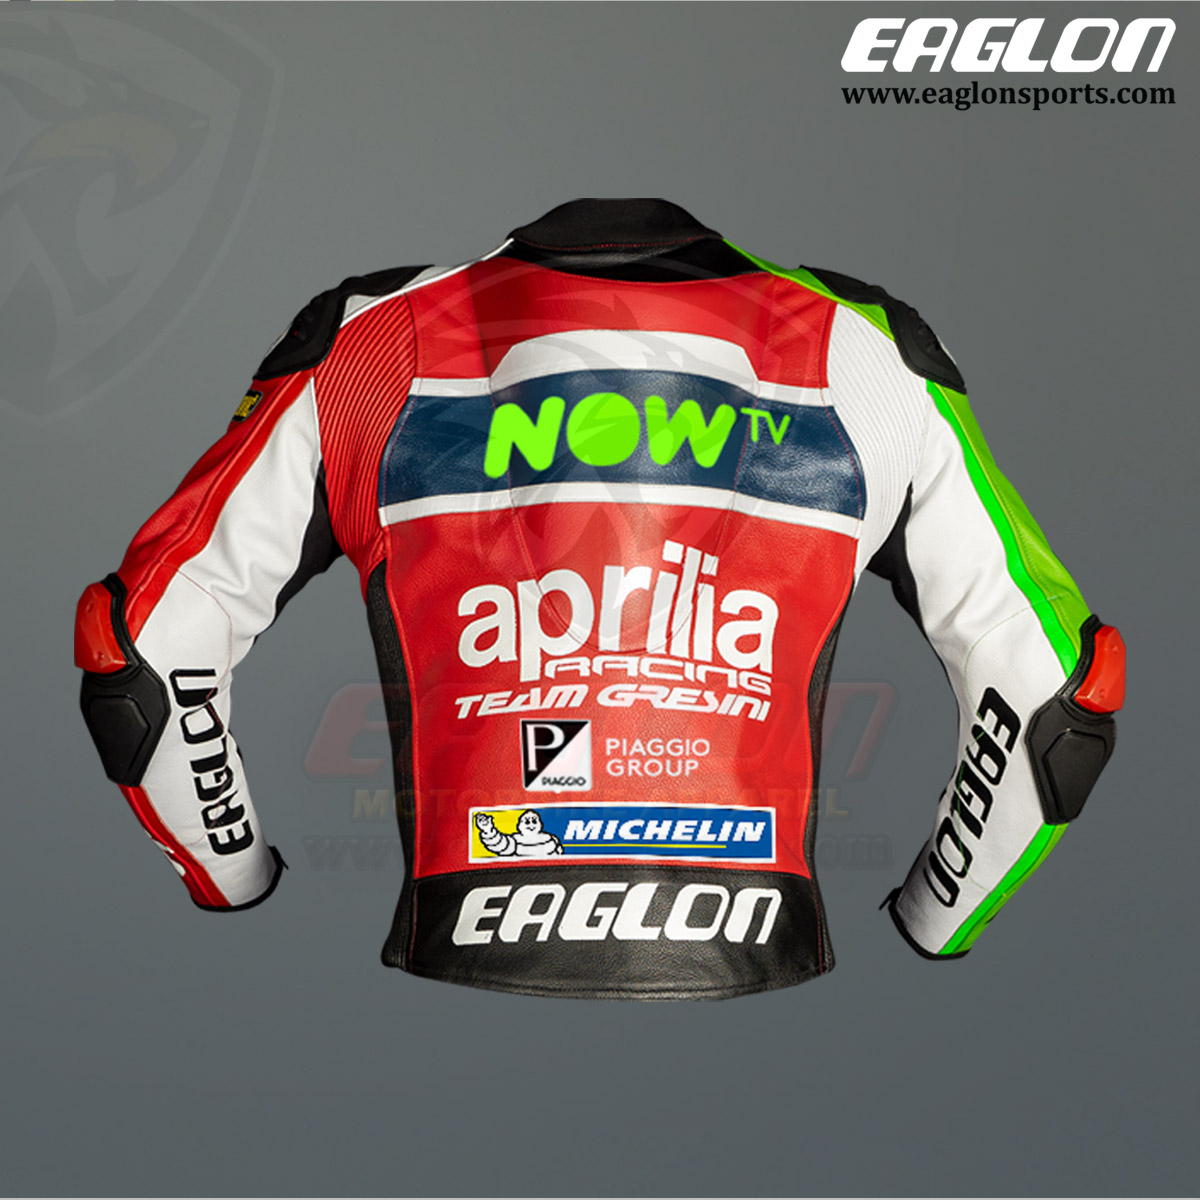 Aleix-Espargaro-Aprilia-NOW-Tv-MotoGP-2017-Leather-Riding-Jacket